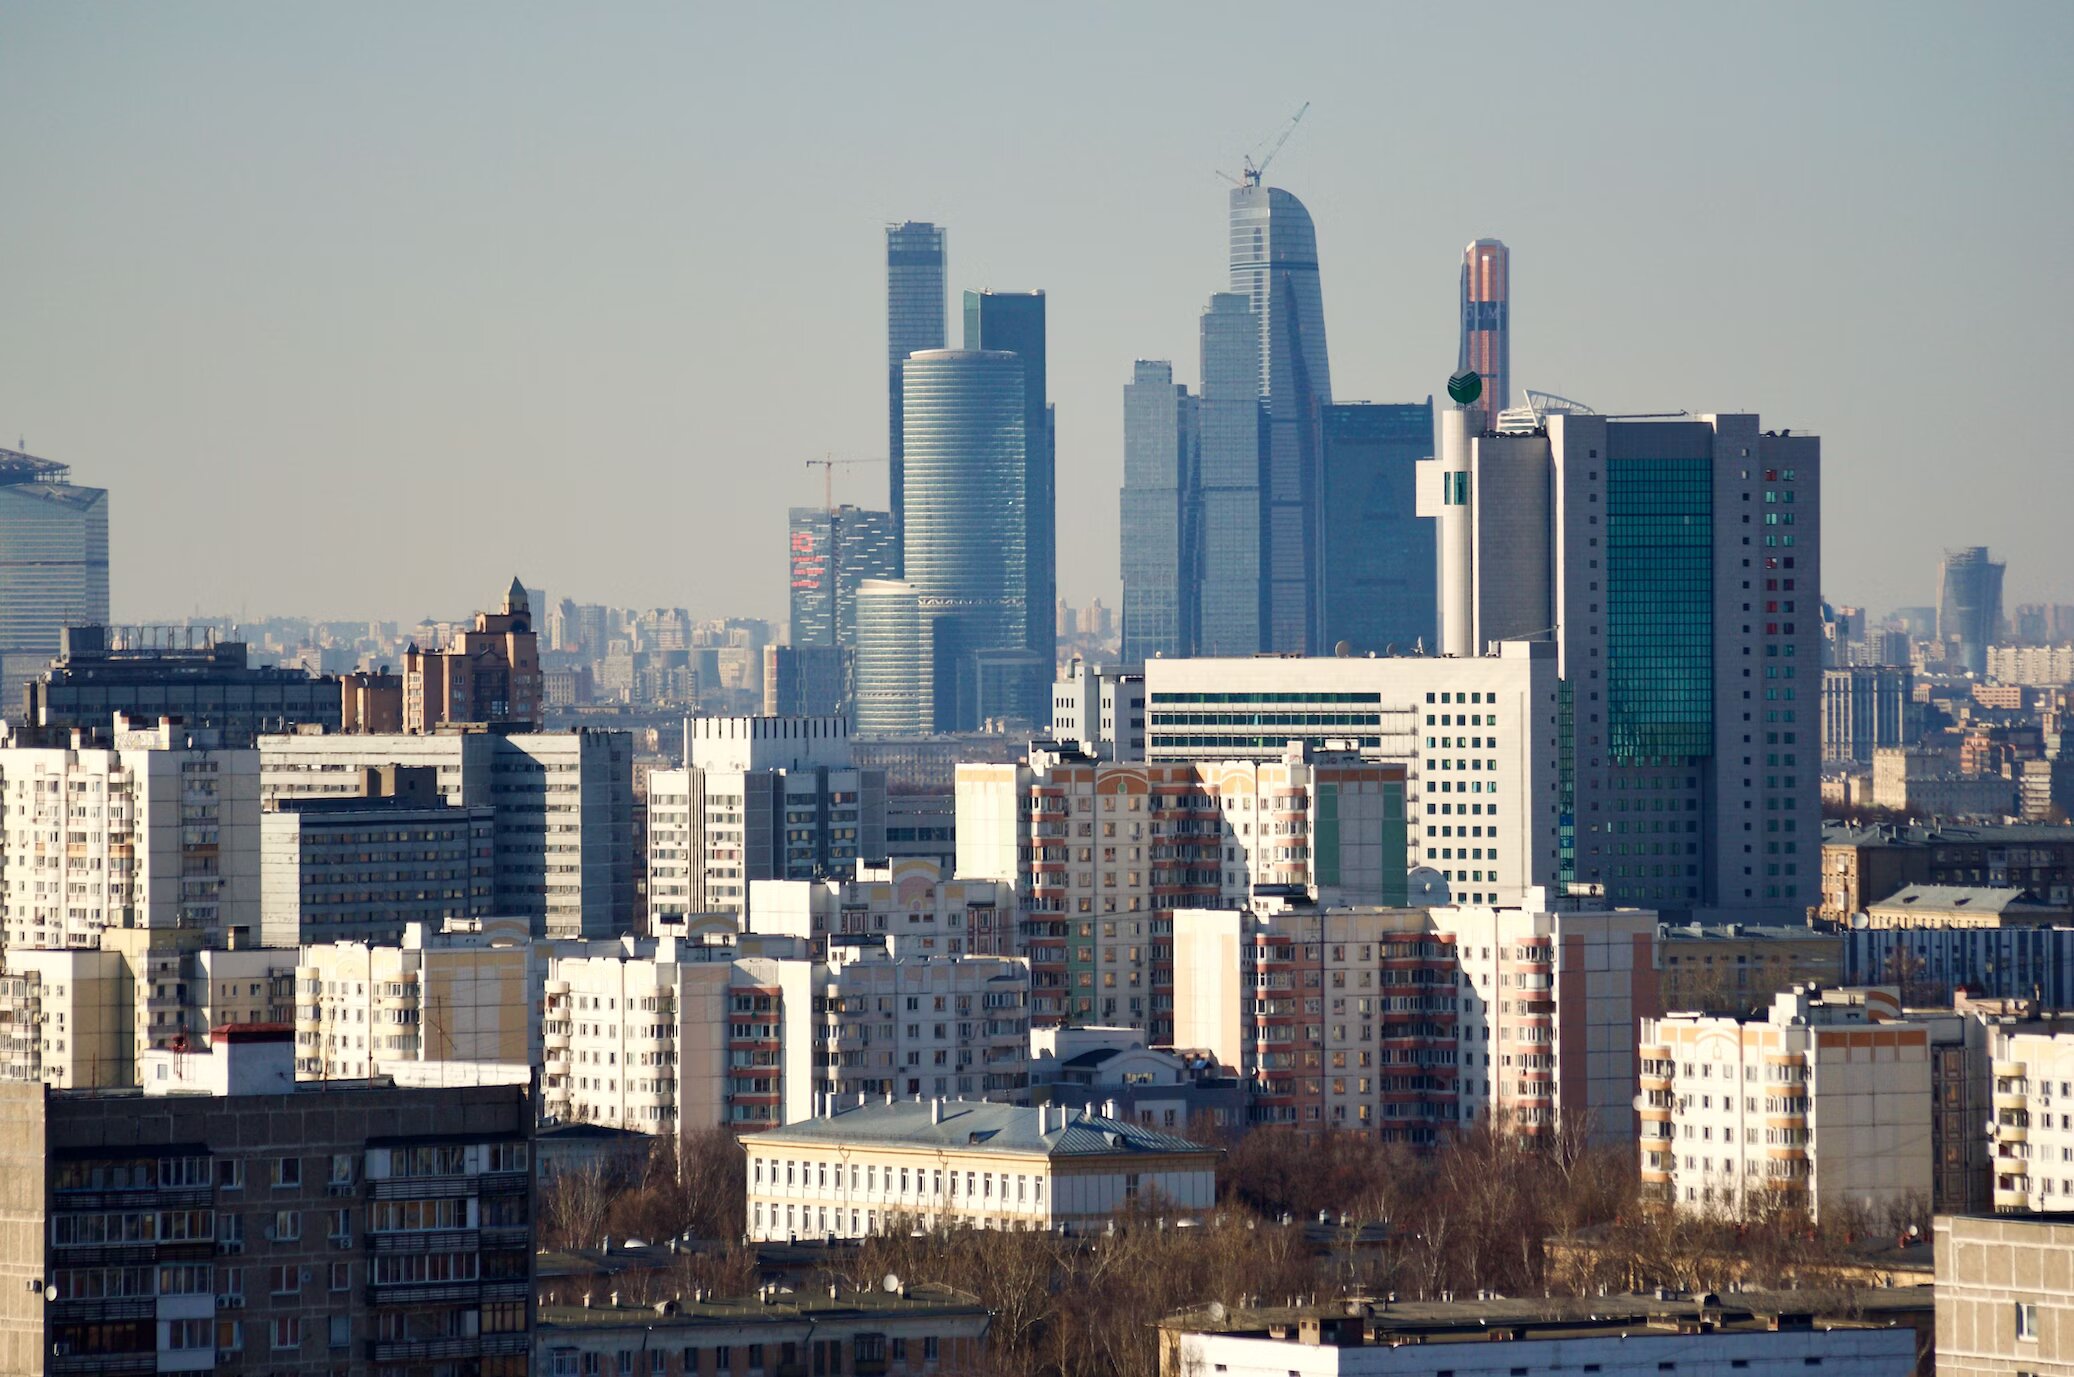 Цена вторичного жилья в Москве выросла на 4,5% за счет дорогого сегмента